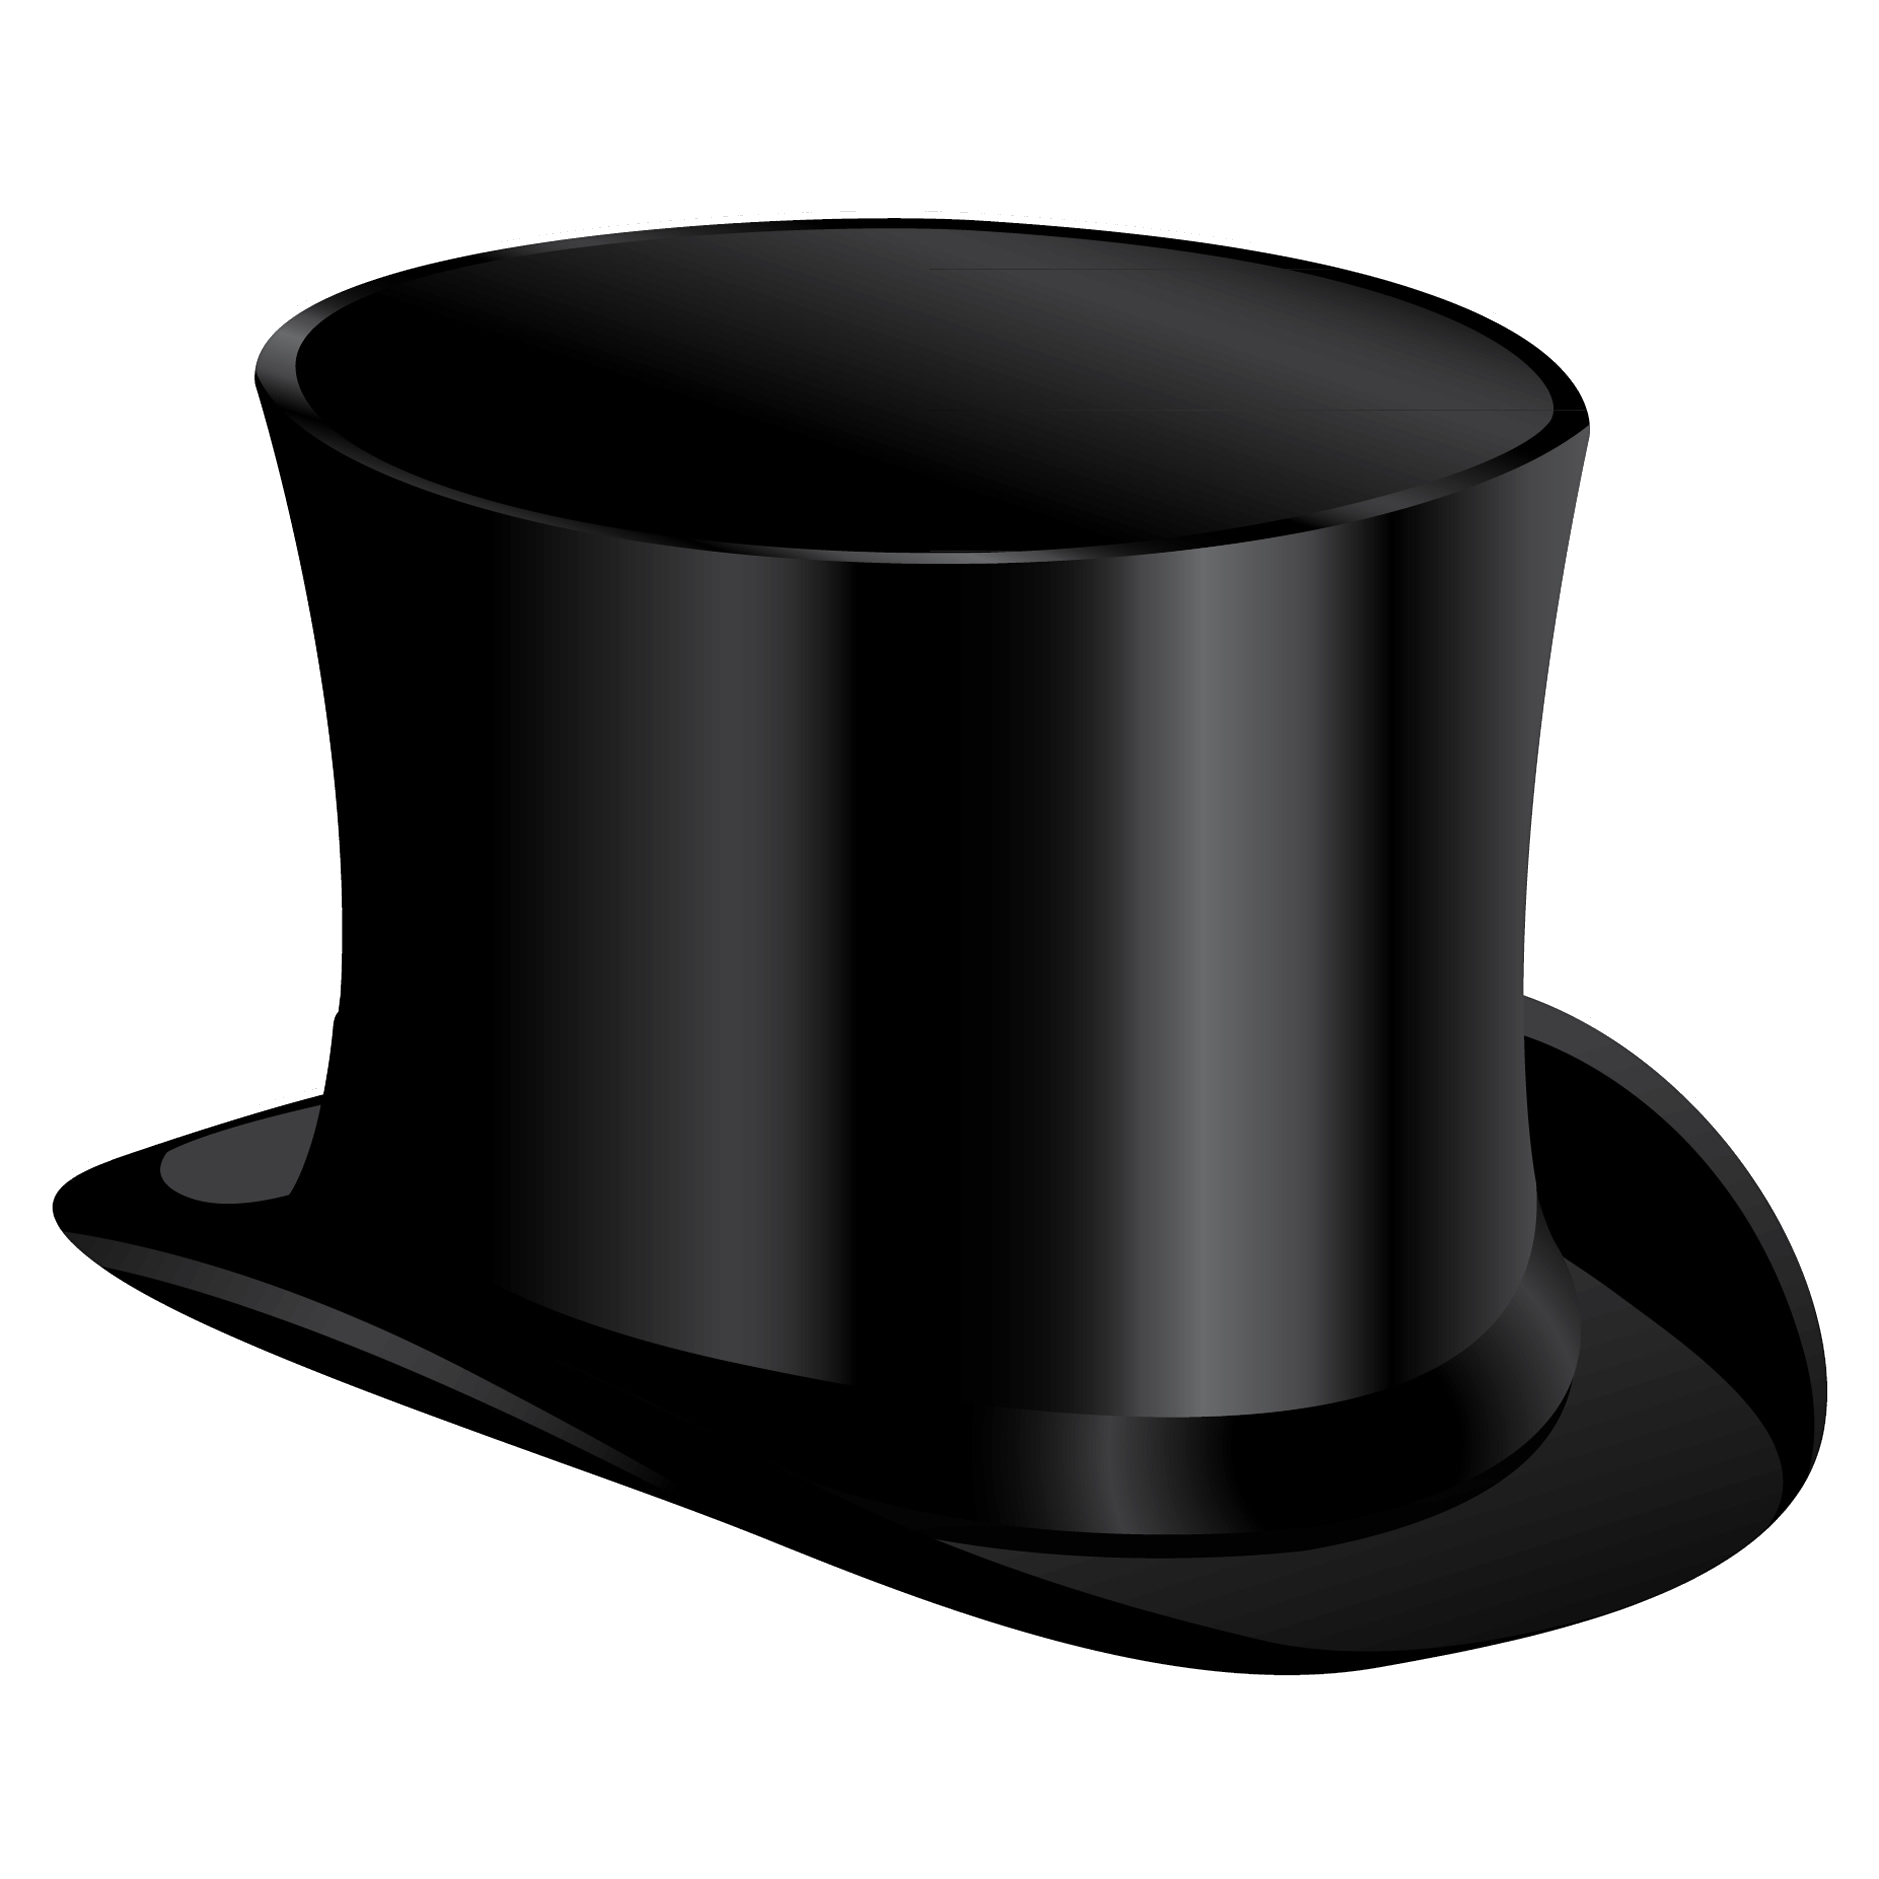 Black cylinder hat PNG image | hat | Pinterest | Black